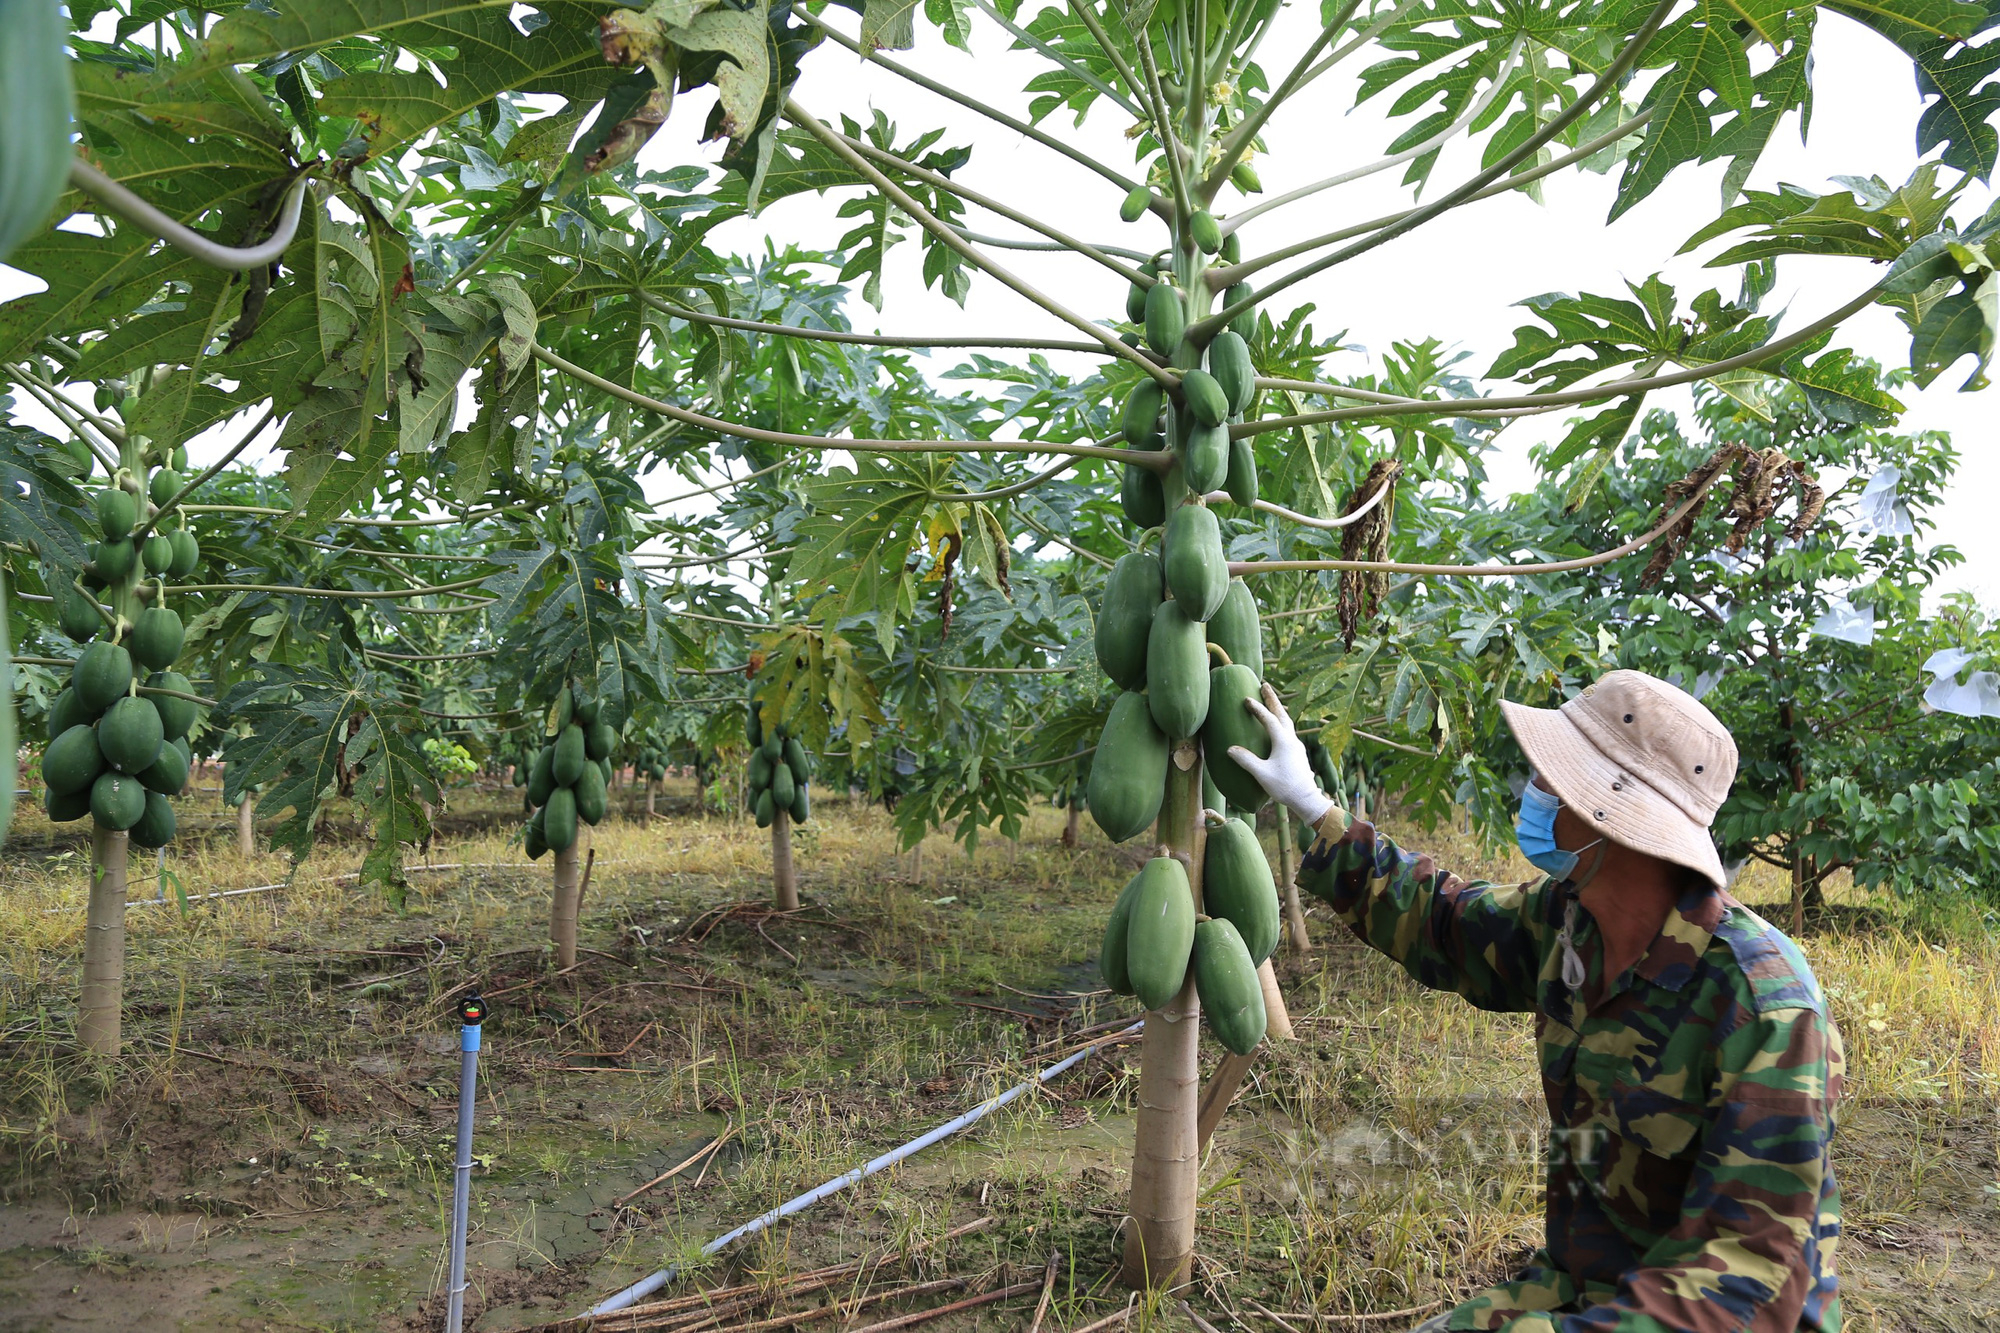 Loại quả vỏ xanh ruột vàng mang lại giá trị kinh tế cao cho người dân ở Đắk Nông - Ảnh 1.